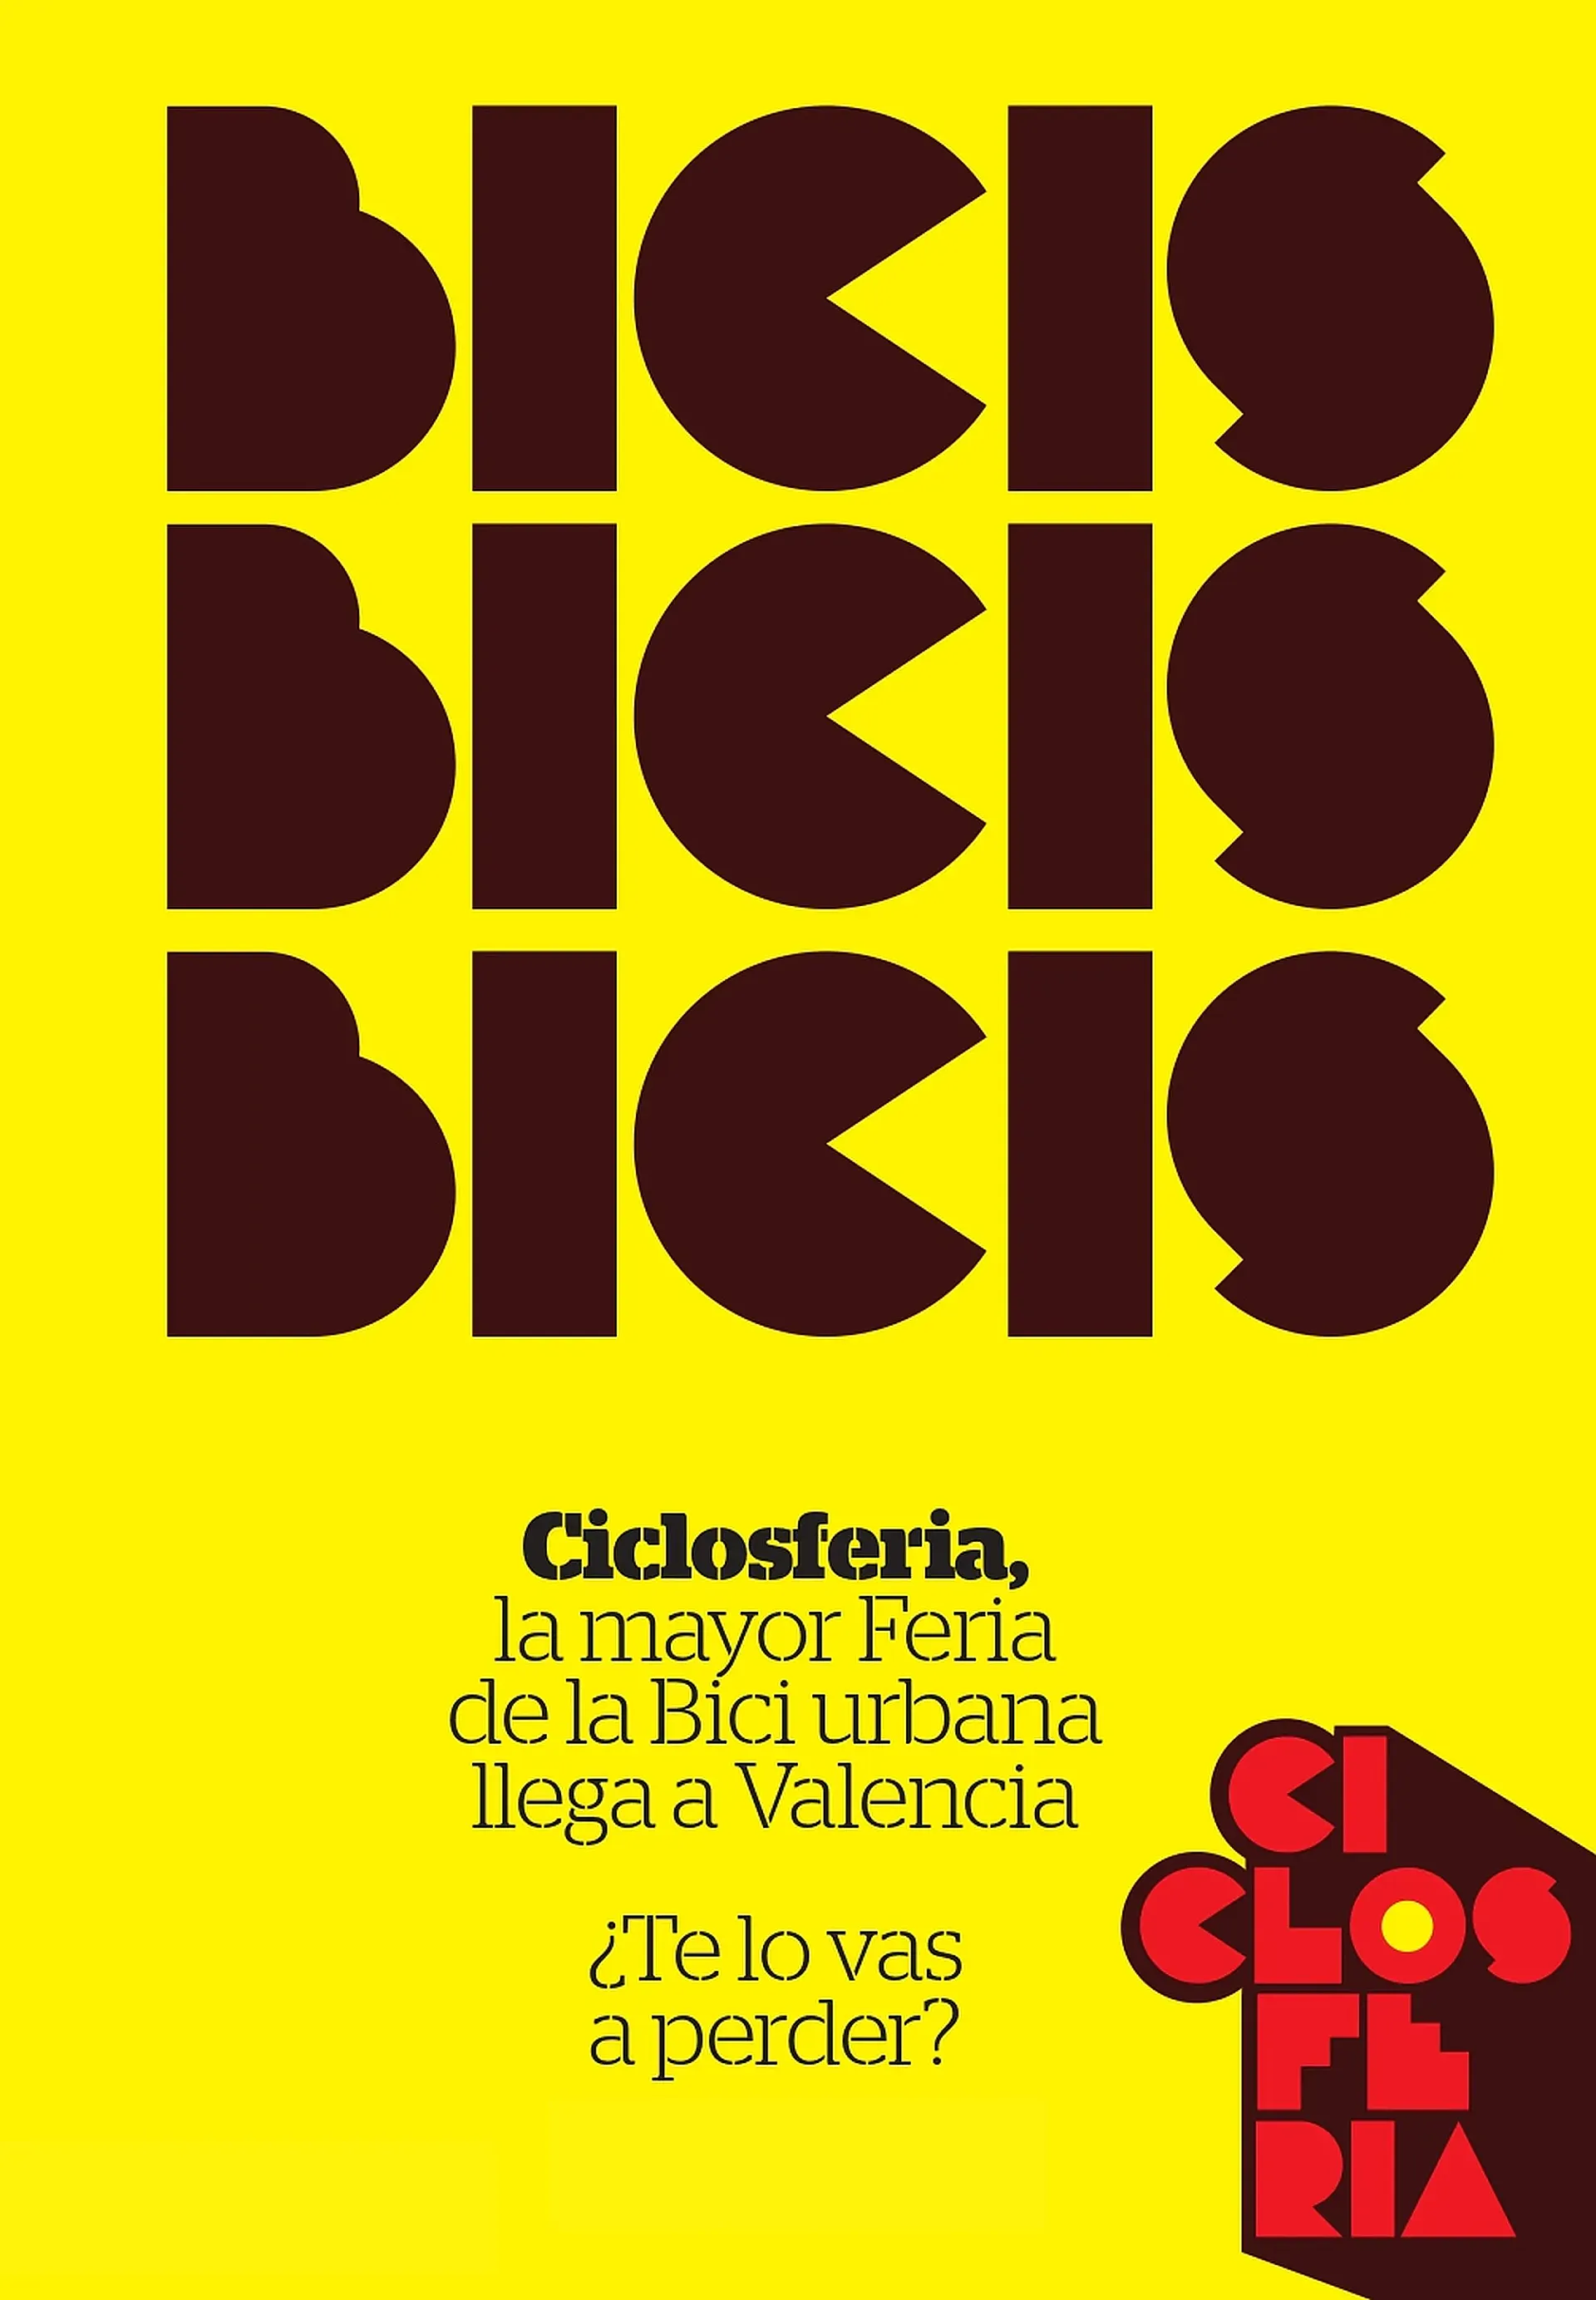 Ciclosferia tendrá lugar del 13 al 15 de mayo en Valencia.